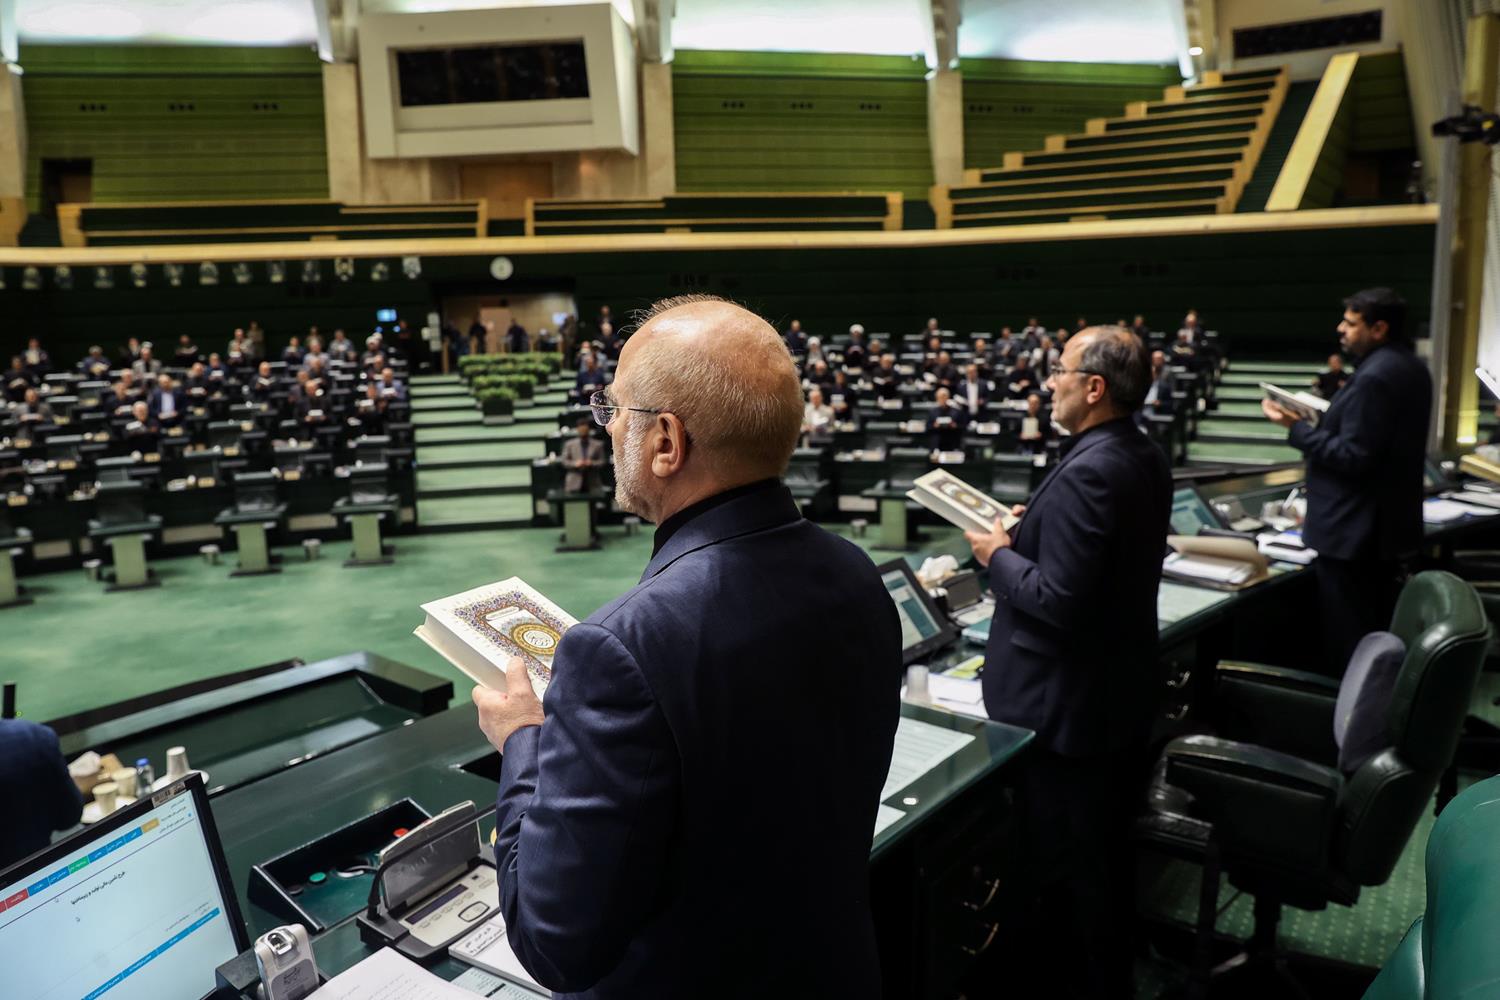 البرلمان الایرانی یقیم وقفة احتجاجية للتندید بتدنيس القرآن الكريم في بعض الدول الأوروبية  